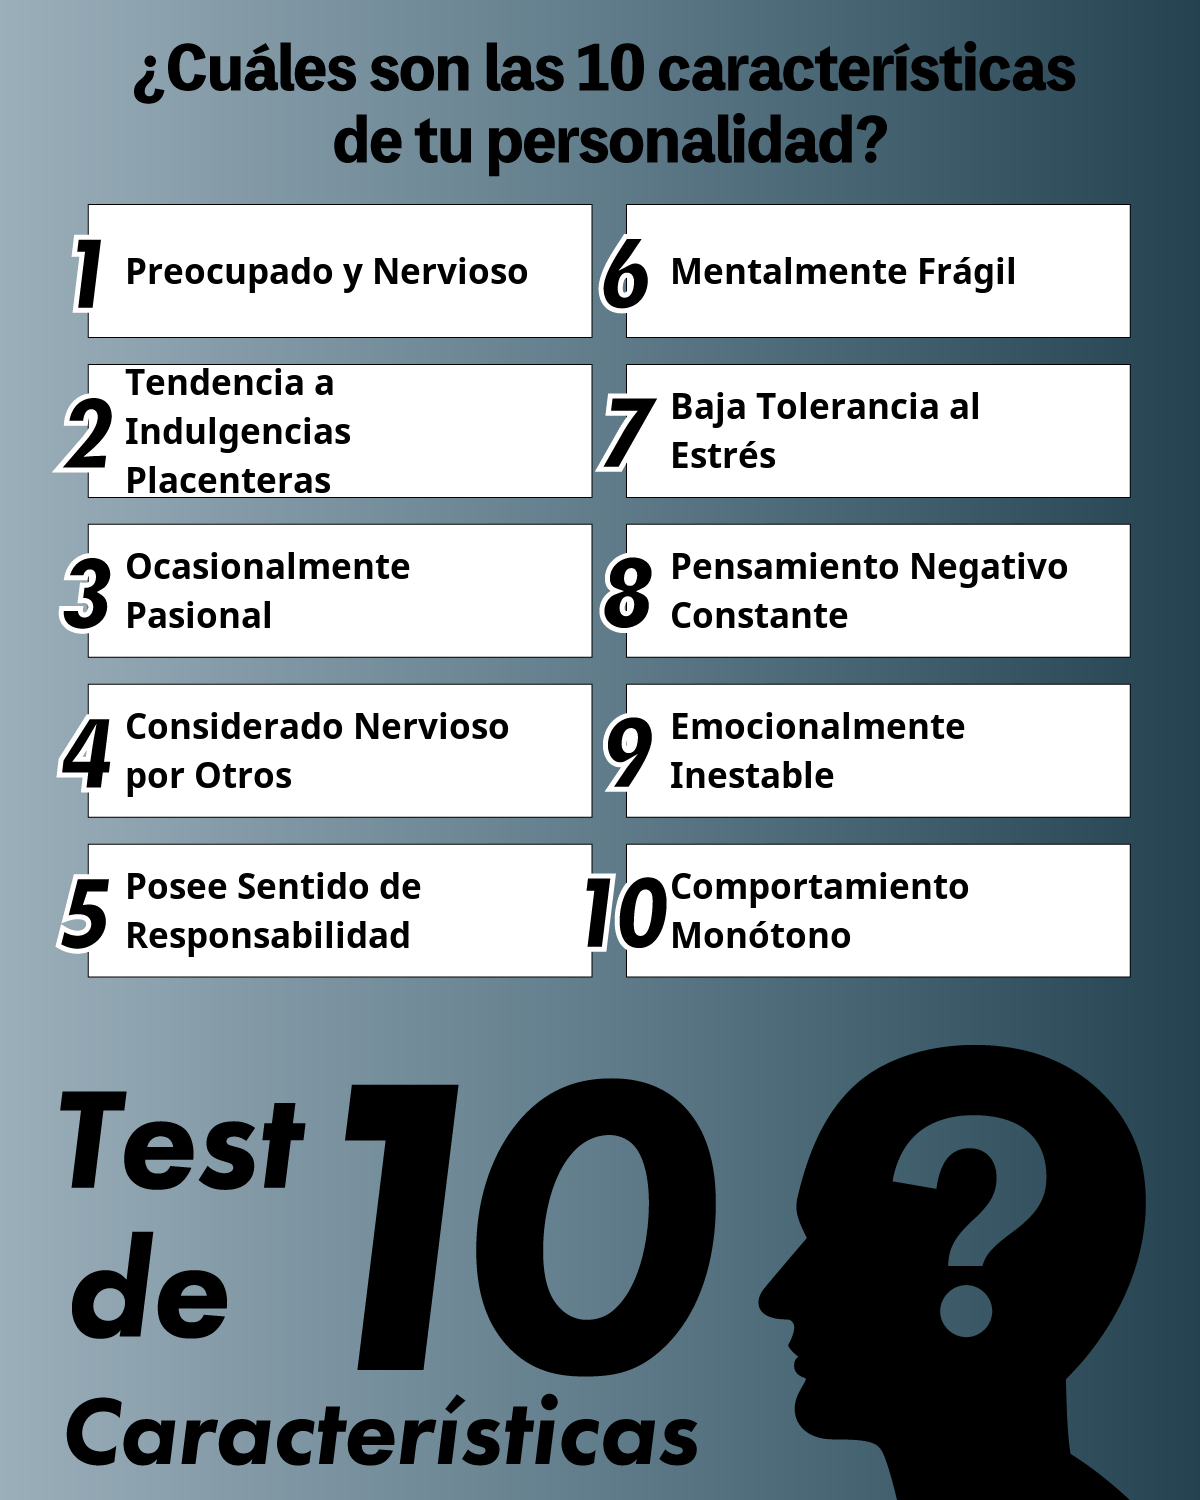 Test de 10 Características | ¿Cuáles son las 10 características de tu personalidad?